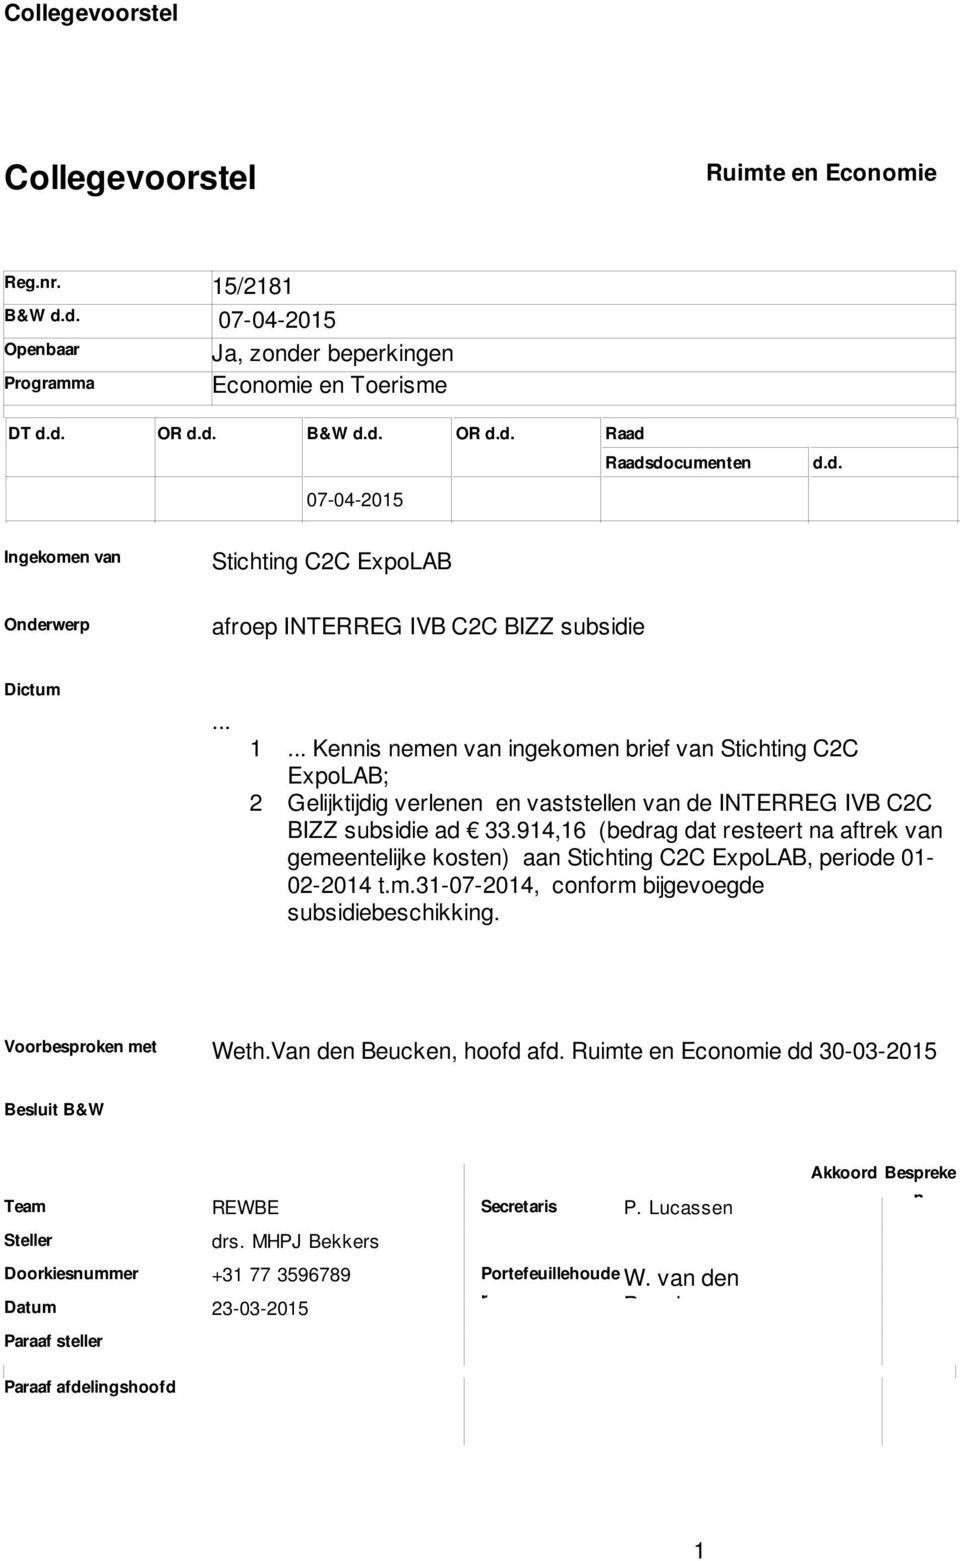 Gelijktijdig verlenen en vaststellen van de INTERREG IVB C2C BIZZ subsidie ad 33914,16 (bedrag dat resteert na aftrek van gemeentelijke kosten) aan Stichting C2C ExpoLAB, periode 01-02-2014